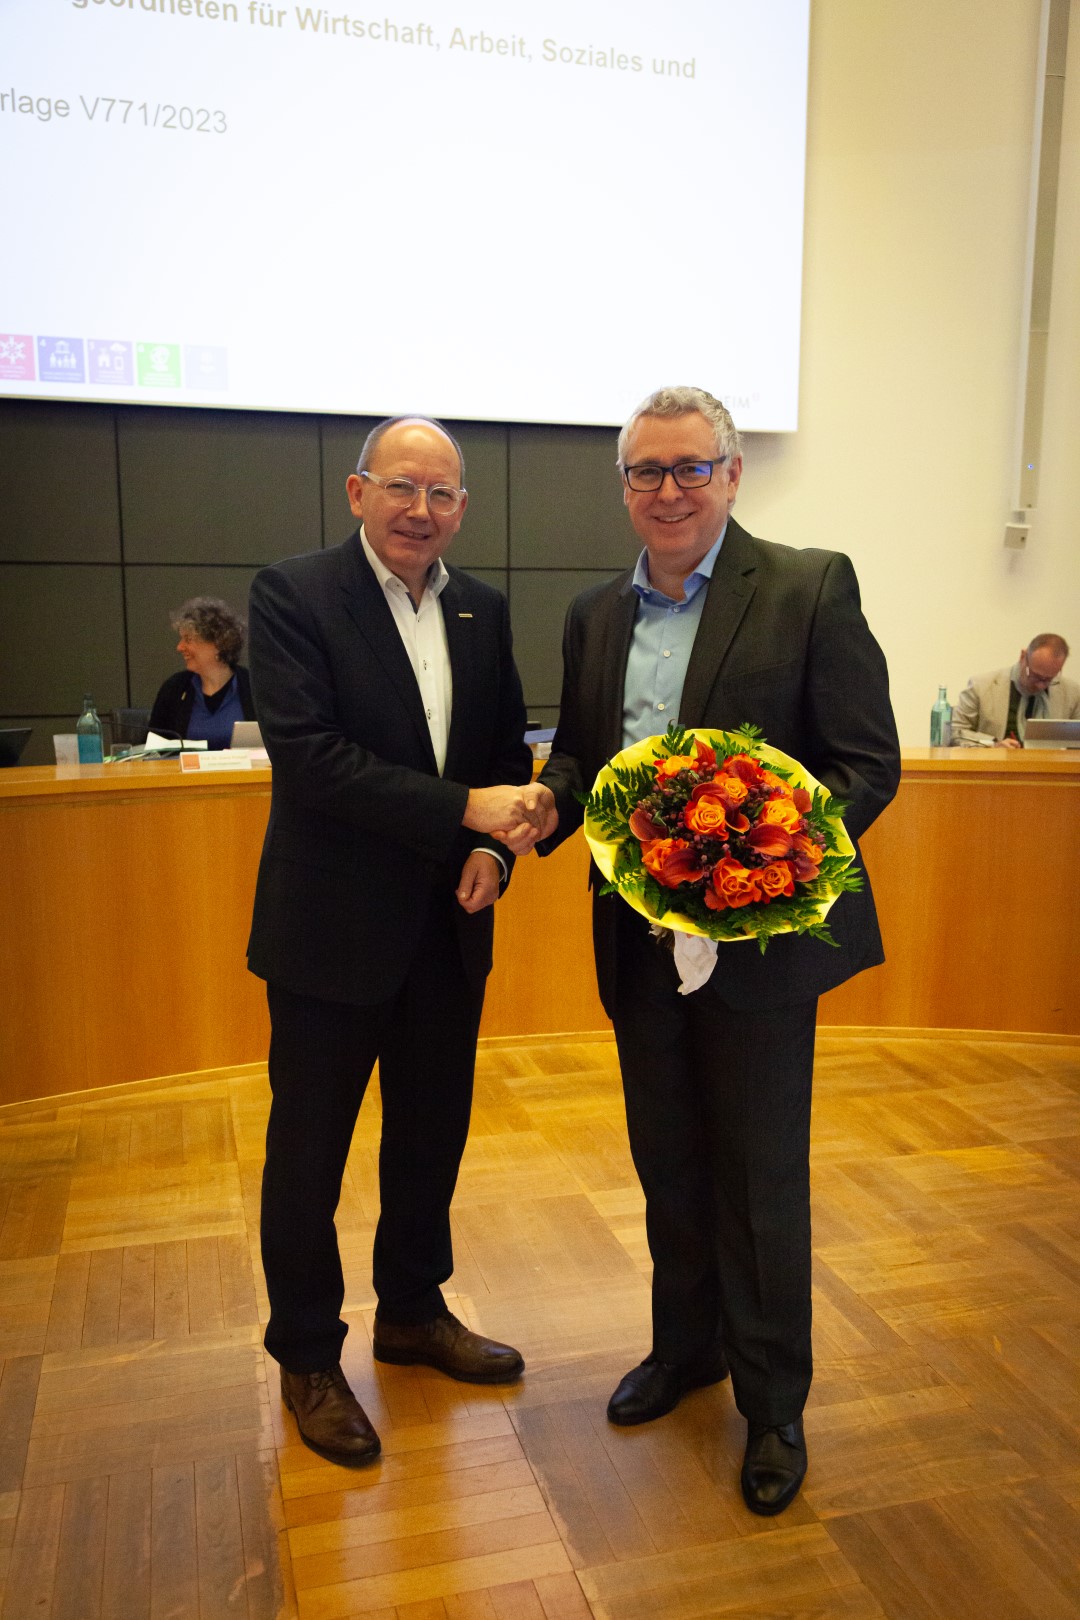 Oberbürgermeister Christian Specht überreicht dem neu gewählten Dezernenten Thorsten Riehle einen Blumenstrauß.